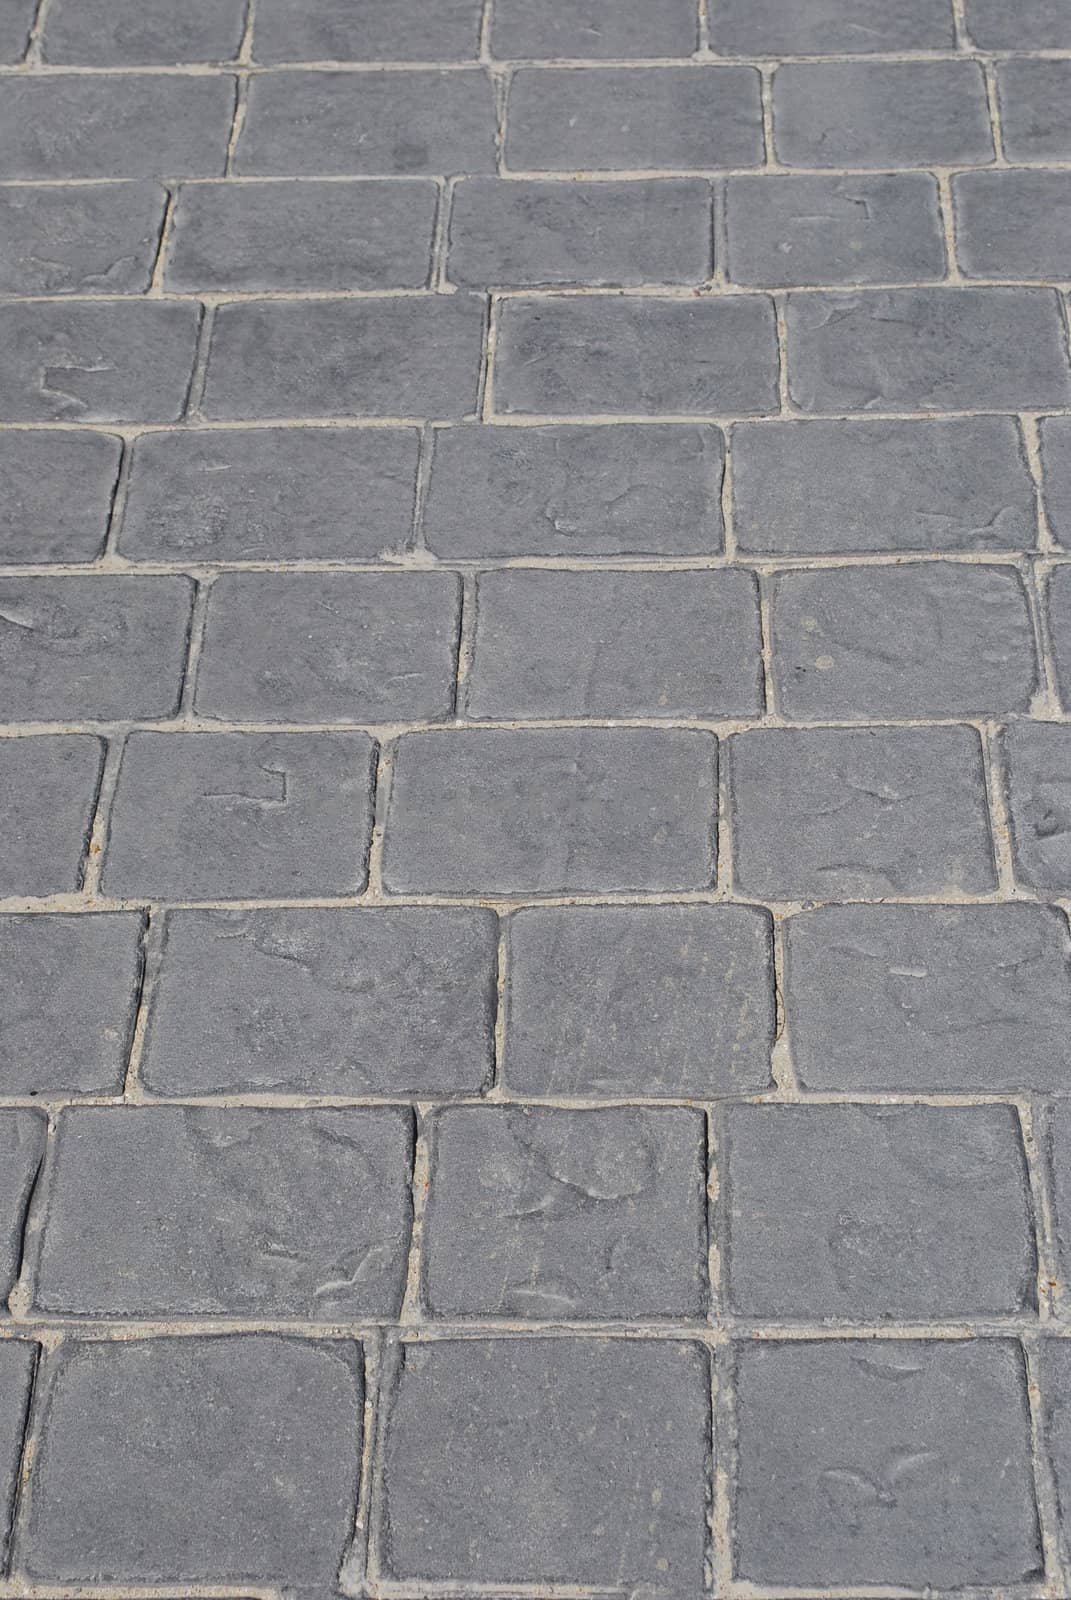 Granite pavement background by luissantos84